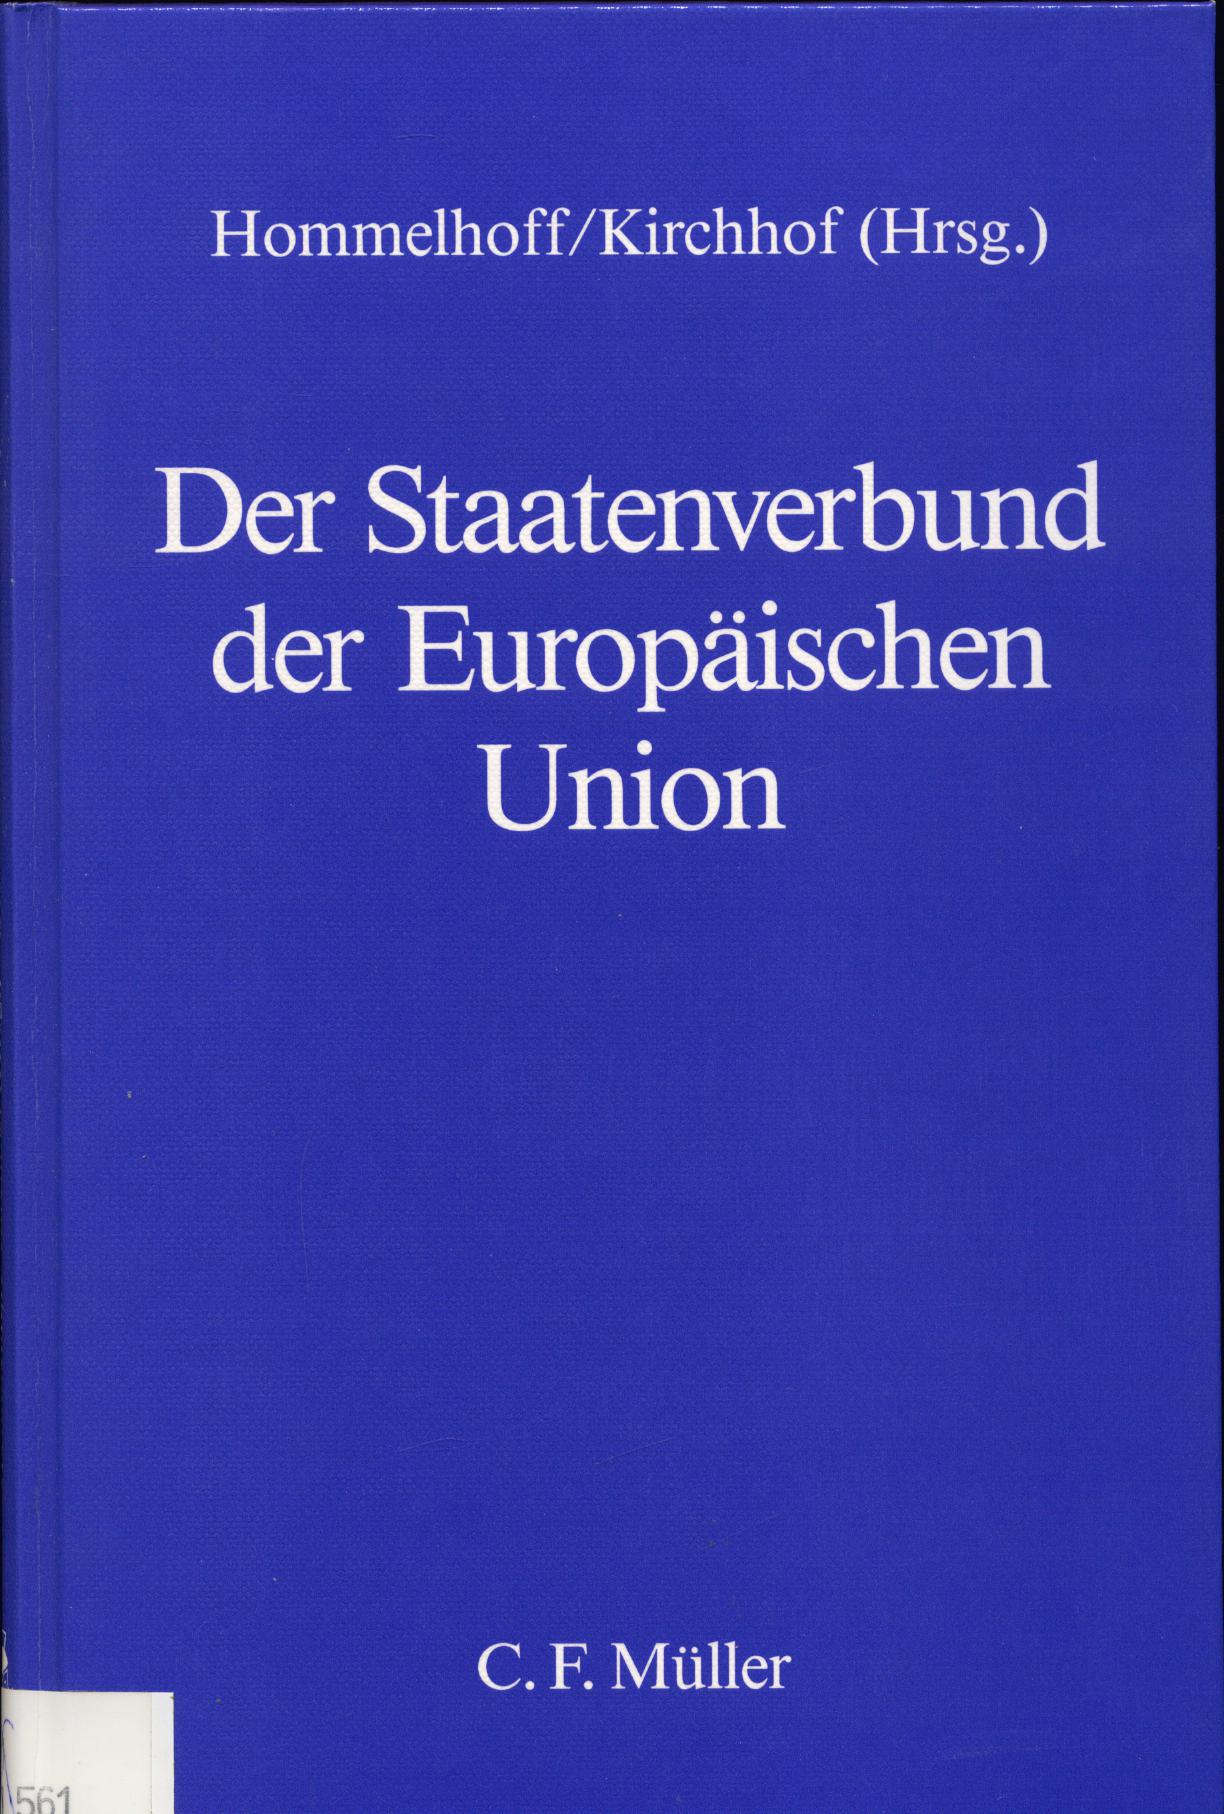 Der Staatenverbund der Europäischen Union Beiträge und Diskussionen des Symposions am 21./22. Januar 1994 in Heidelberg - Hommelhoff, Peter und Paul Kirchhof